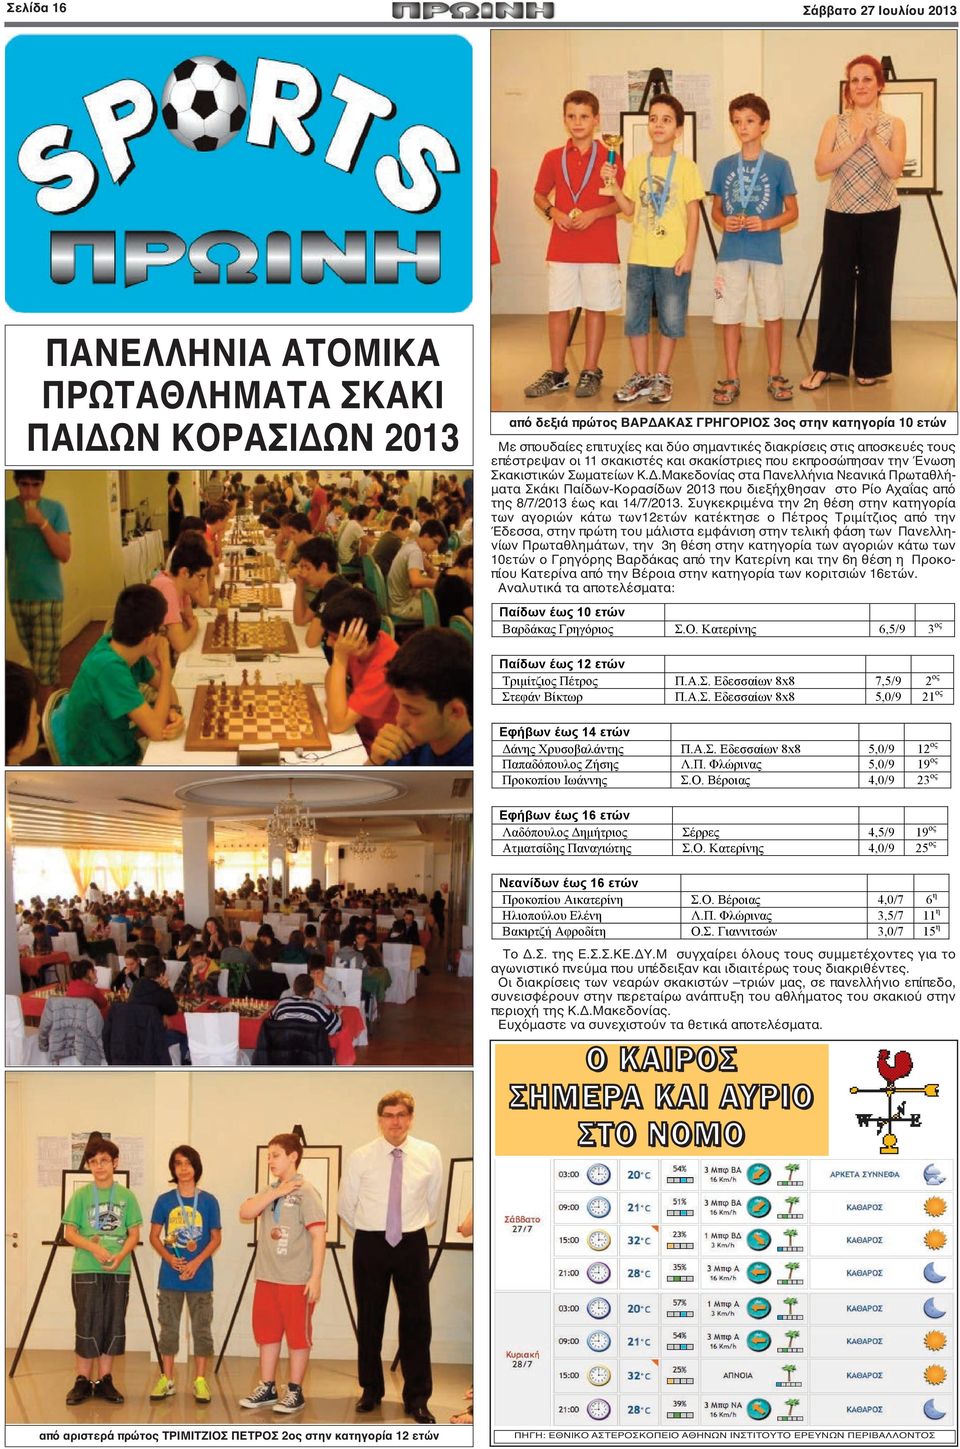 Μακεδονίας στα Πανελλήνια Νεανικά Πρωταθλήματα Σκάκι Παίδων-Κορασίδων 2013 που διεξήχθησαν στο Ρίο Αχαΐας από της 8/7/2013 έως και 14/7/2013.